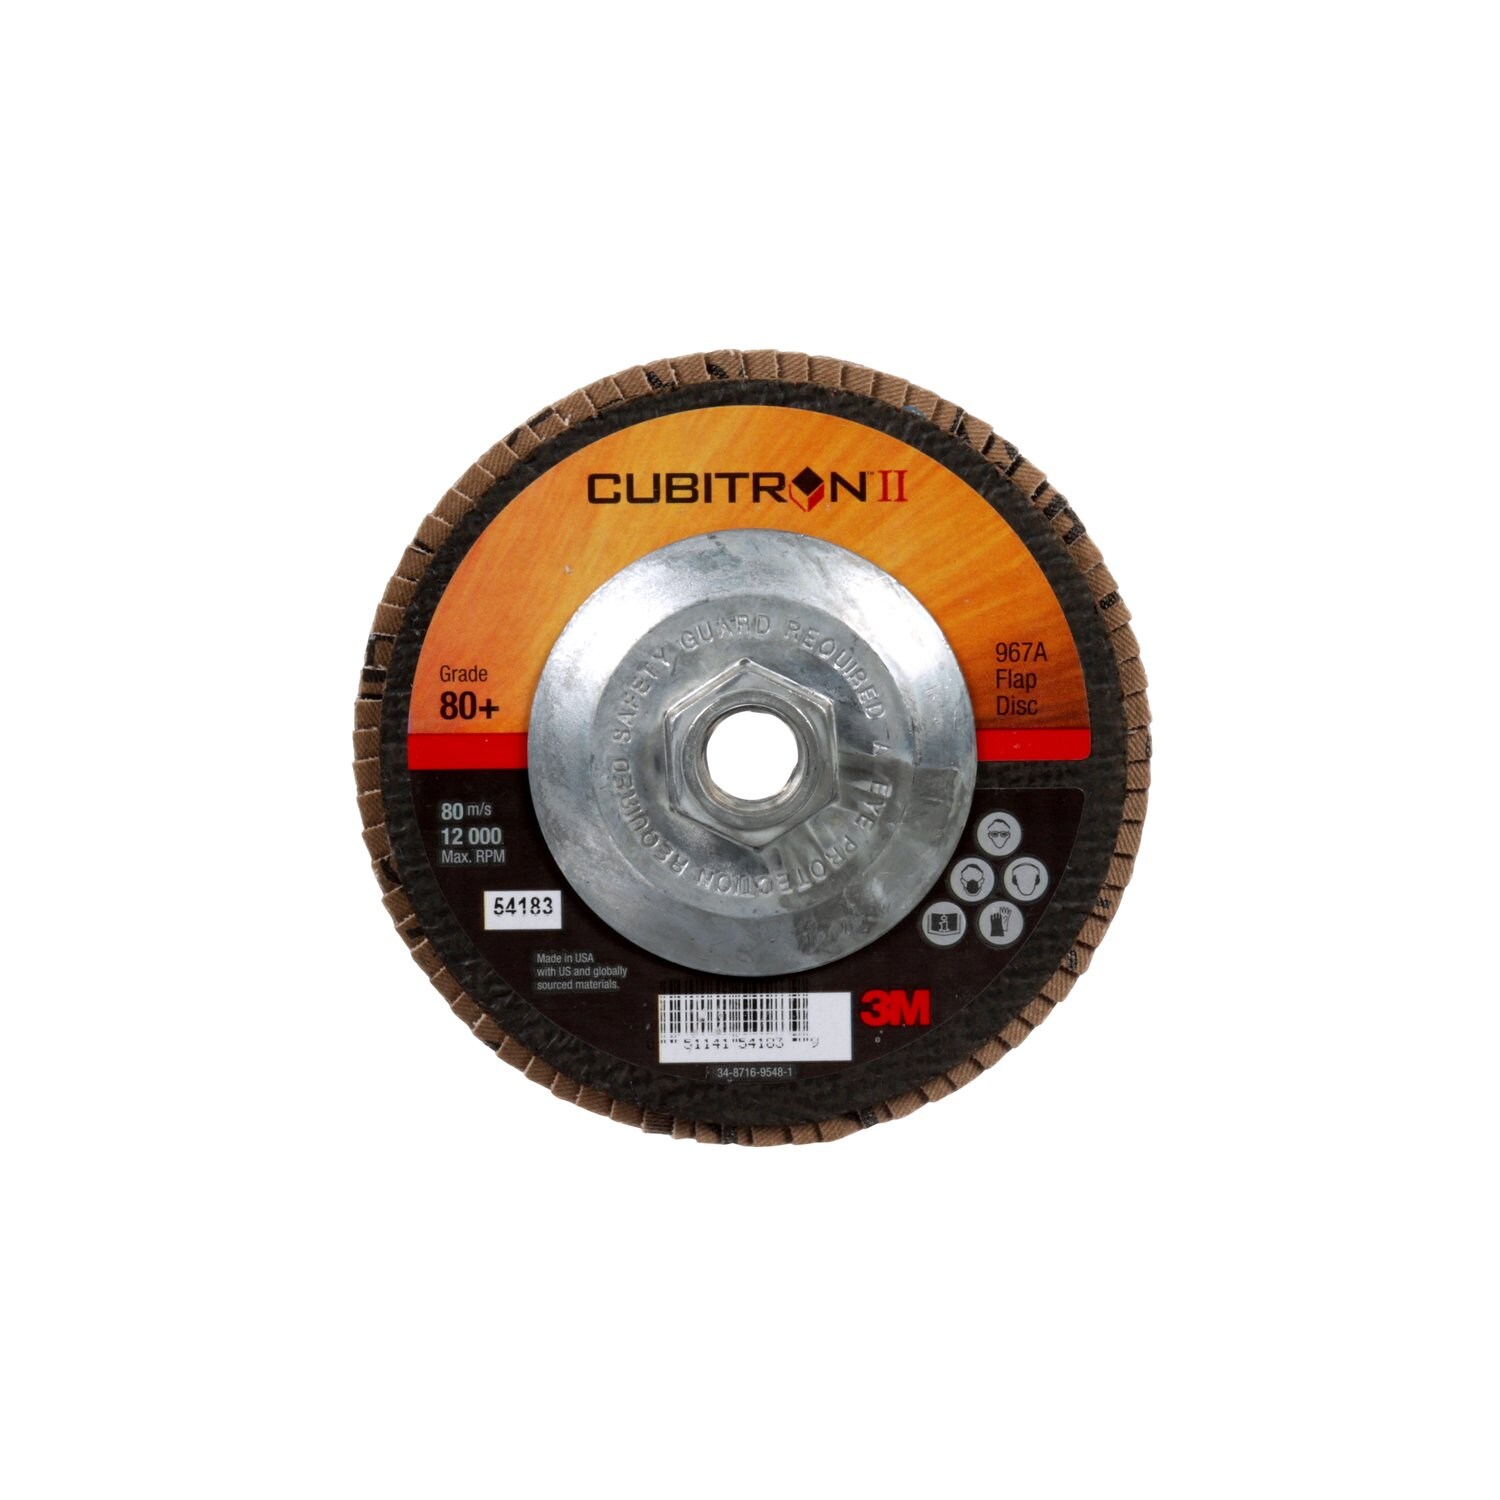 7100049202 - 3M Cubitron II Flap Disc 967A, 80+, T27, 5 in x 5/8"-11, 10 ea/Case